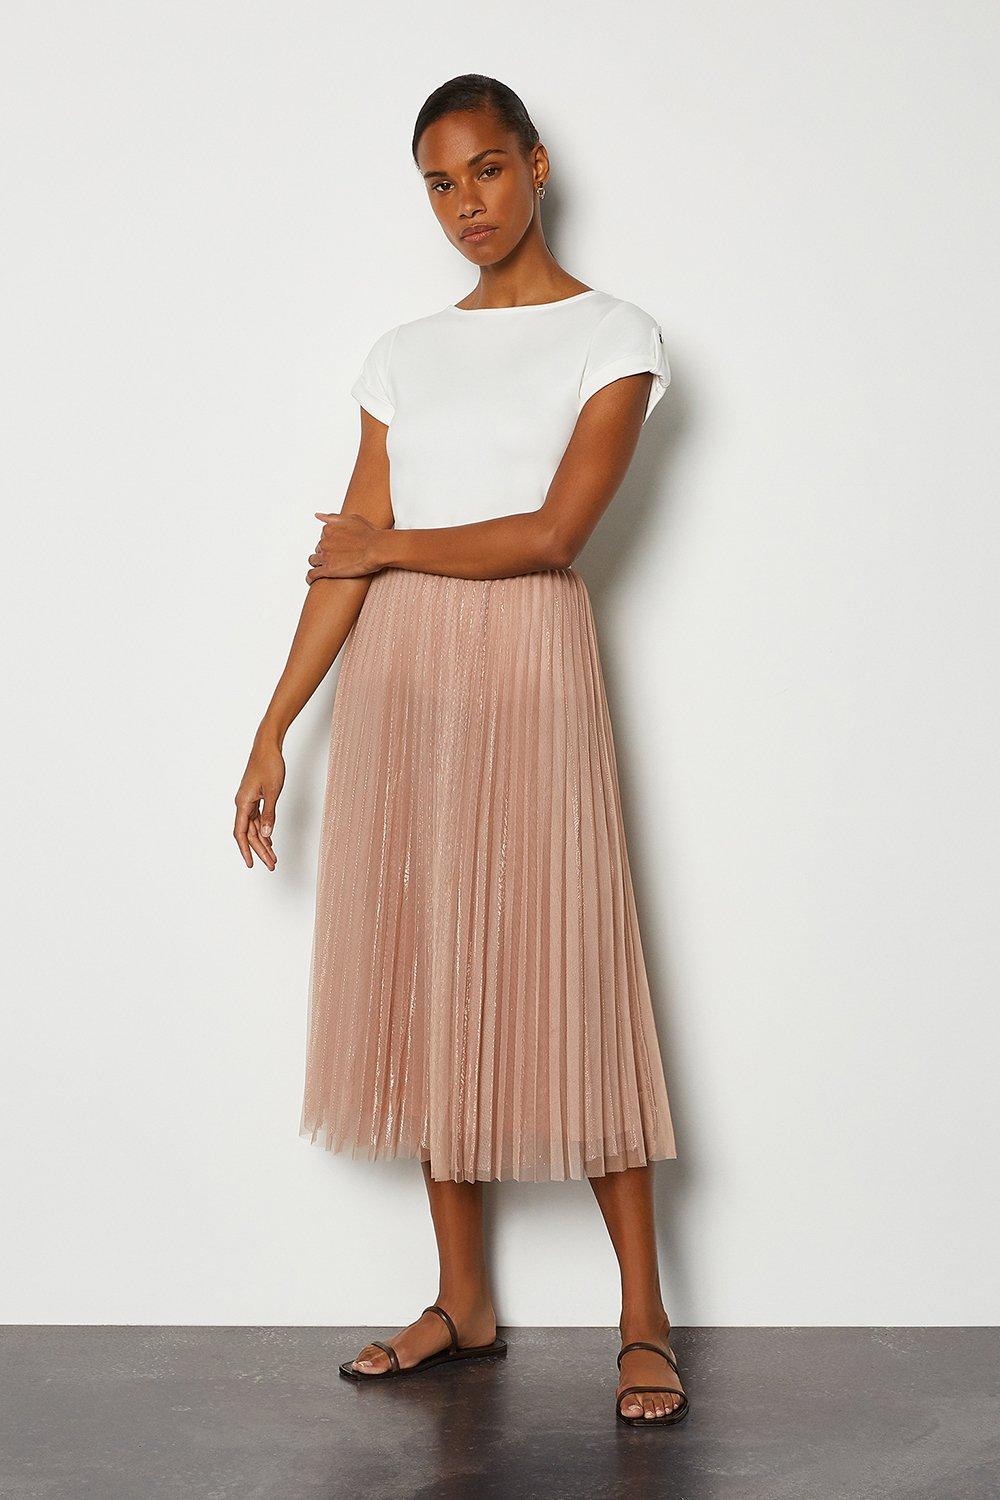 tan pleated skirt